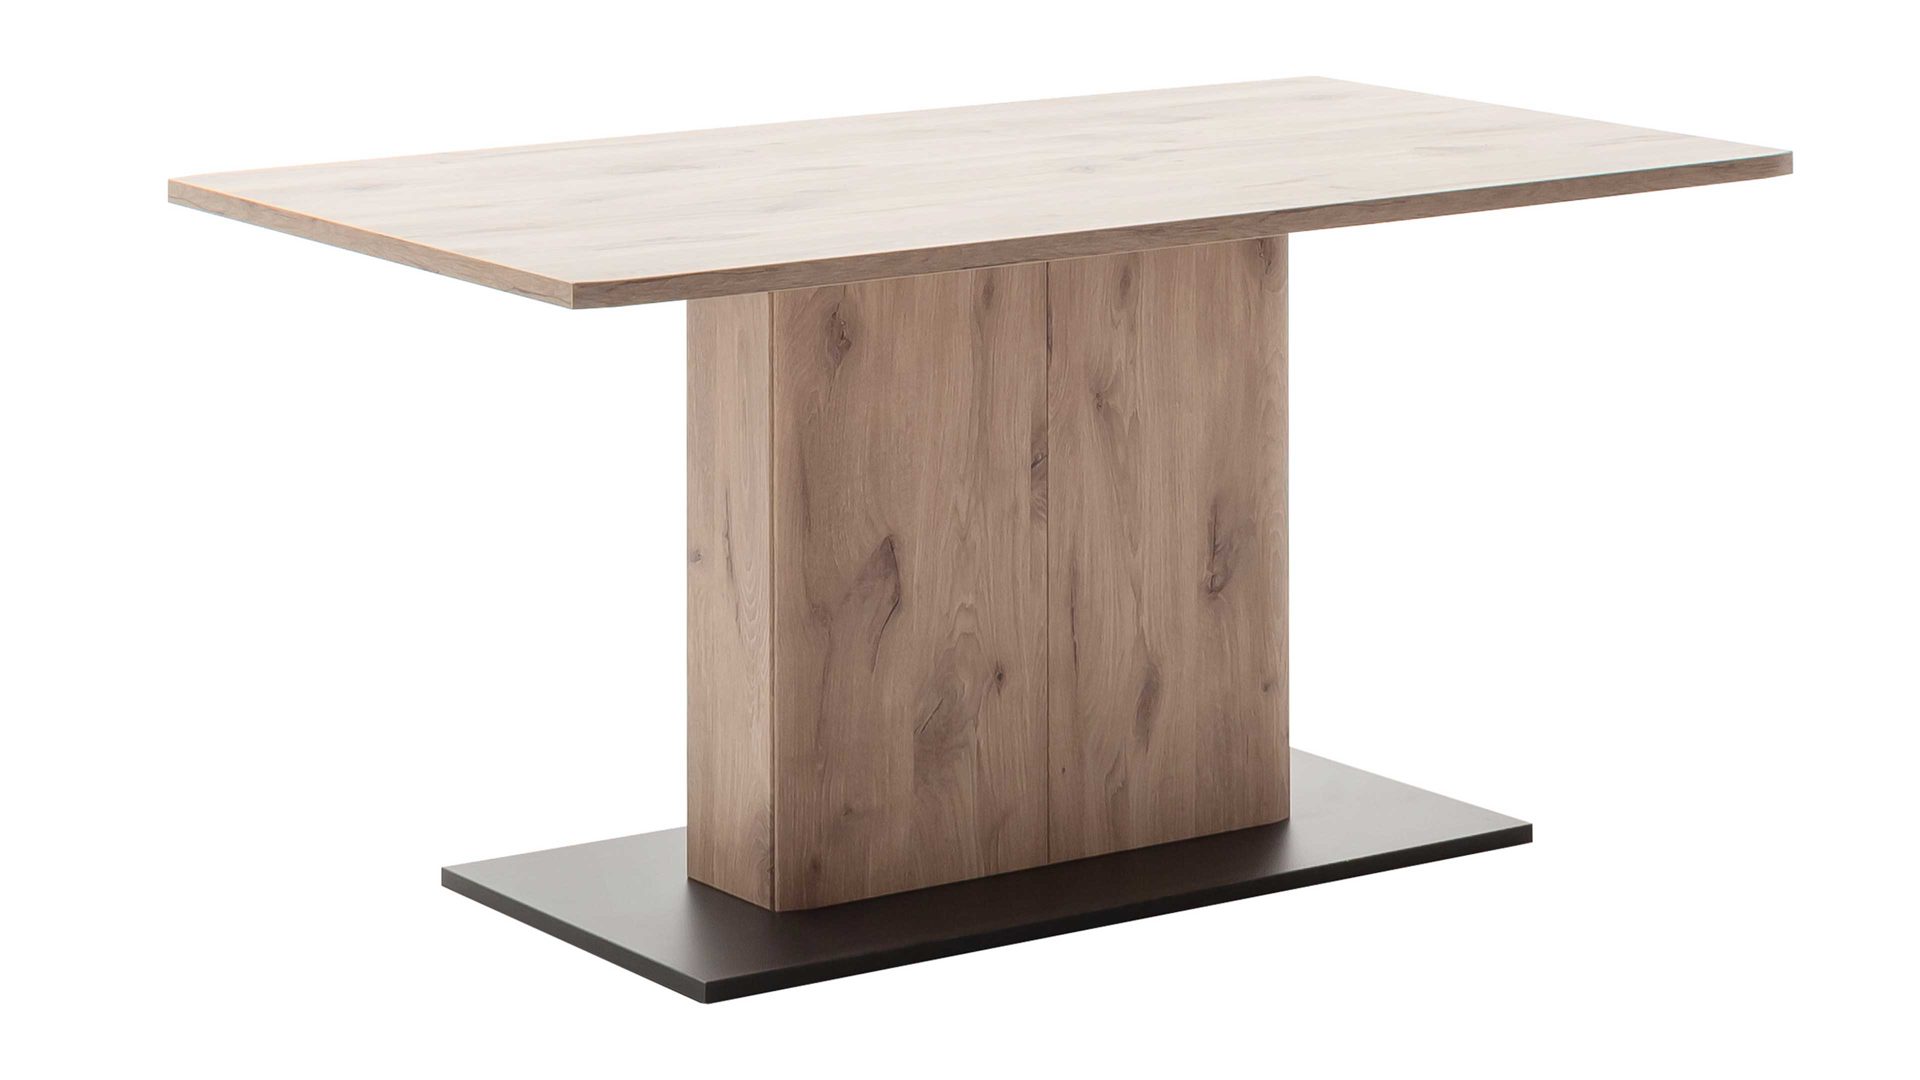 Esstisch Mca furniture aus Holz in Holzfarben Wohnprogramm Prato - Esstisch Viking Oak & Anthrazit - Breite ca. 160 cm